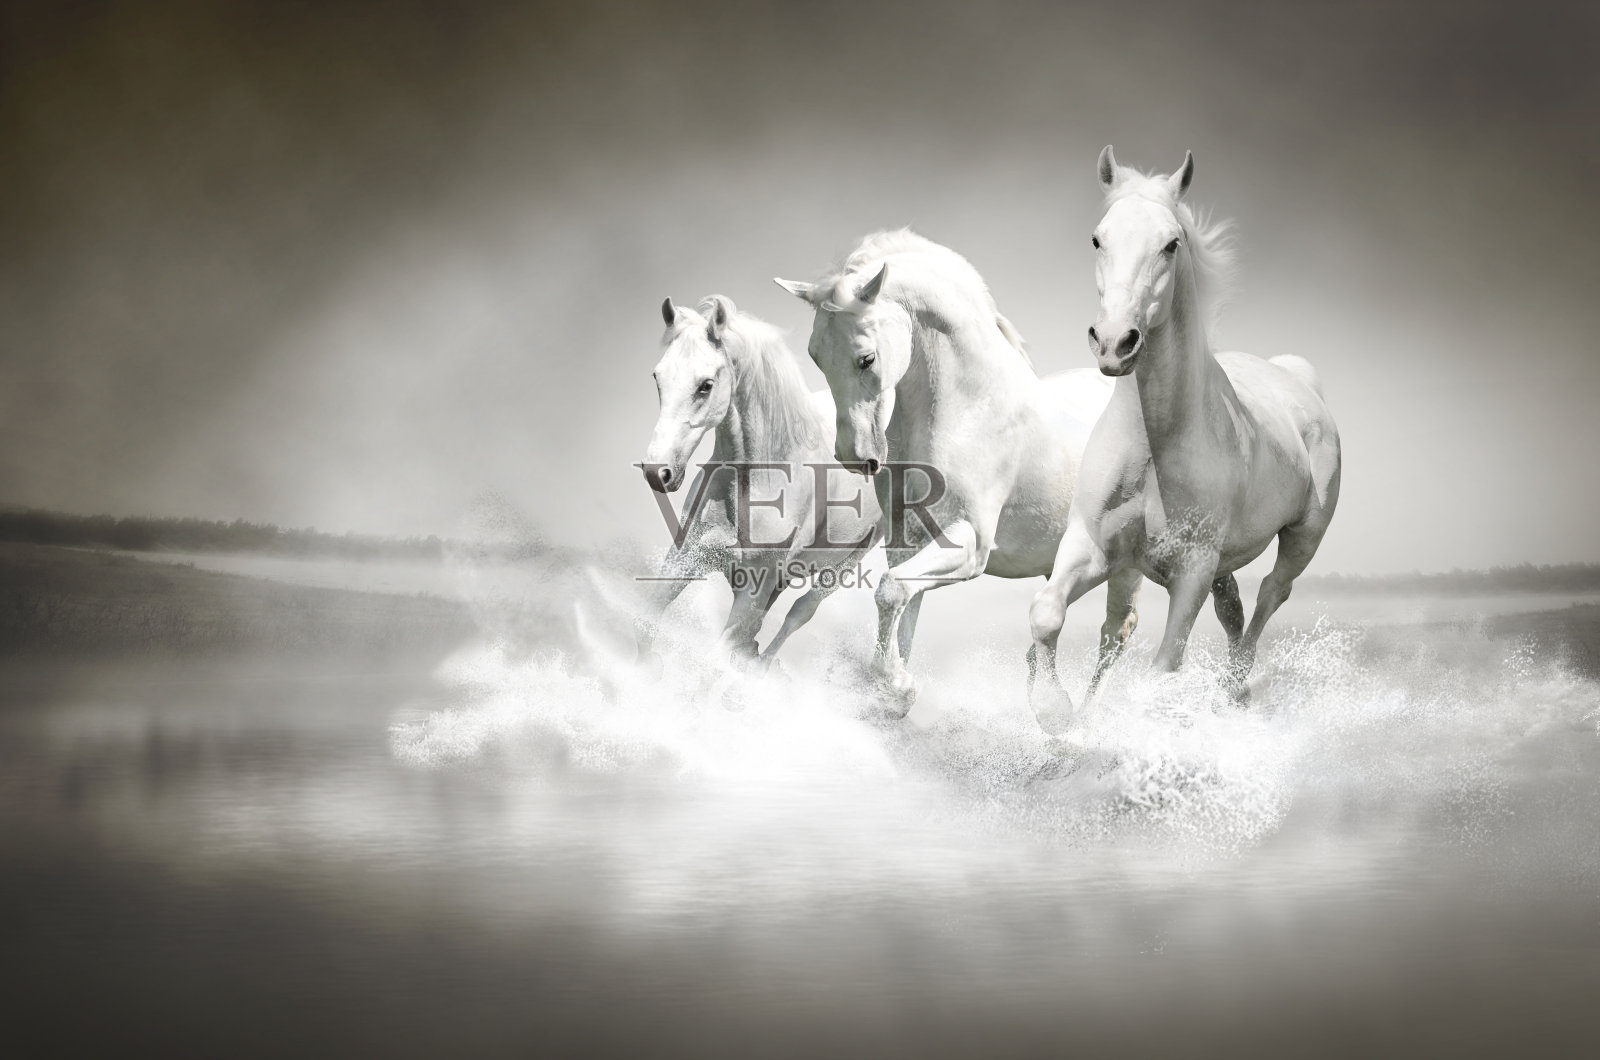 一群在水中奔跑的白马照片摄影图片